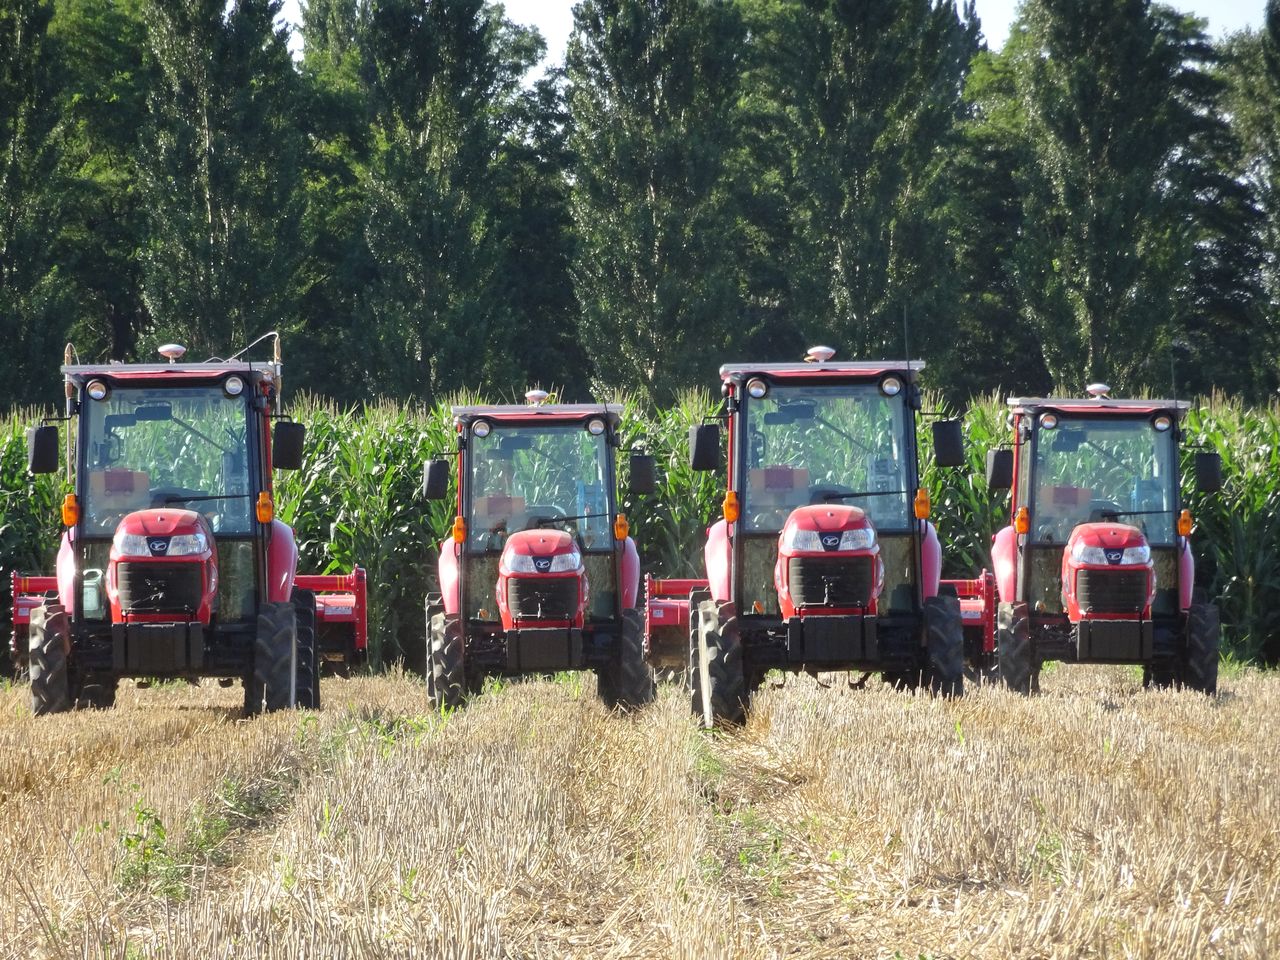 四台机器人拖拉机协同开展耕地作业。驾驶室内没有操作人员（笔者提供）